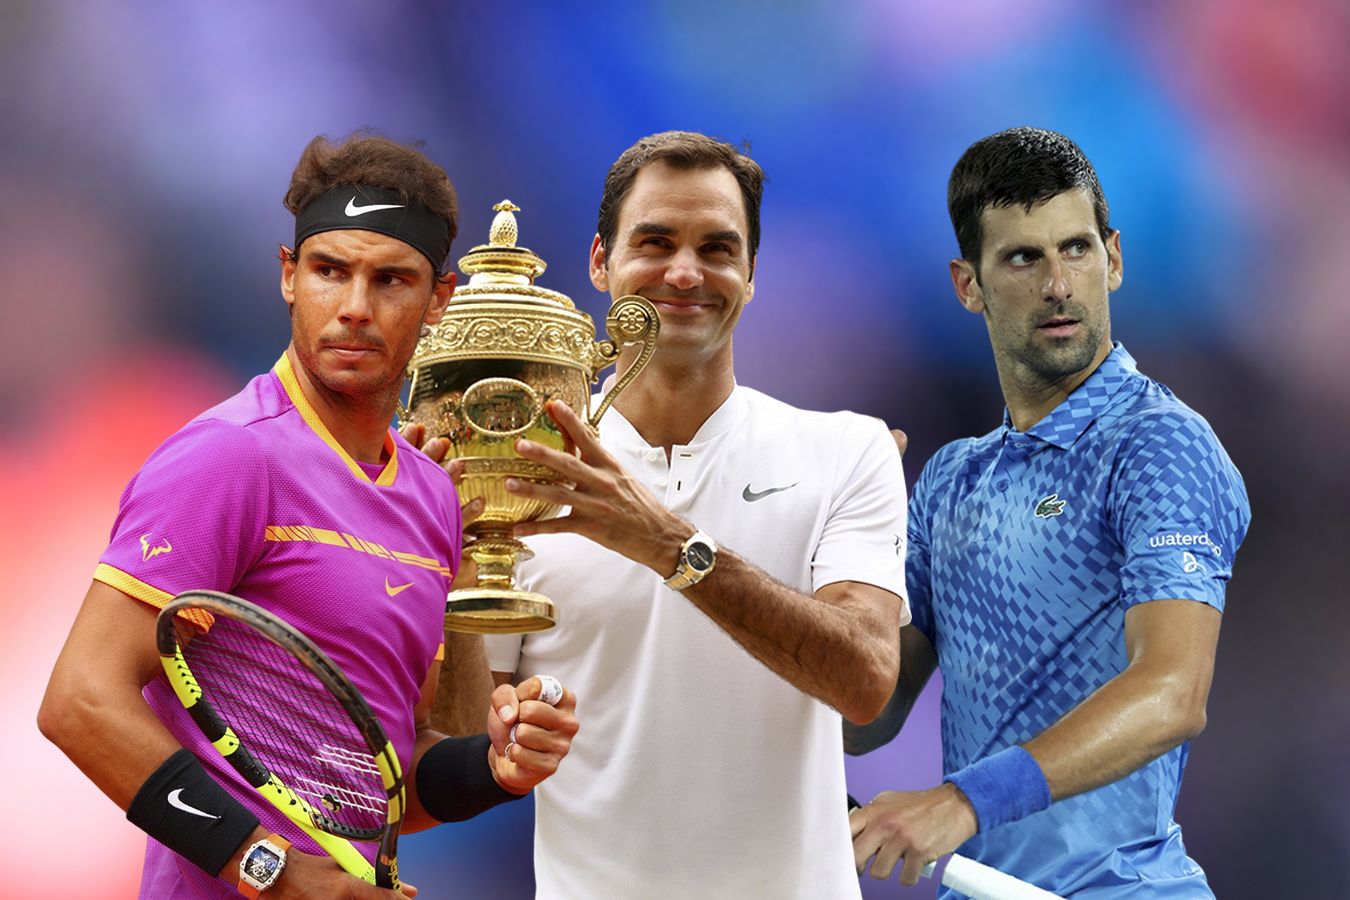 Федерер, Надаль, Джокович — кто самый богатый? Топ-5 высокооплачиваемых теннисистов мира